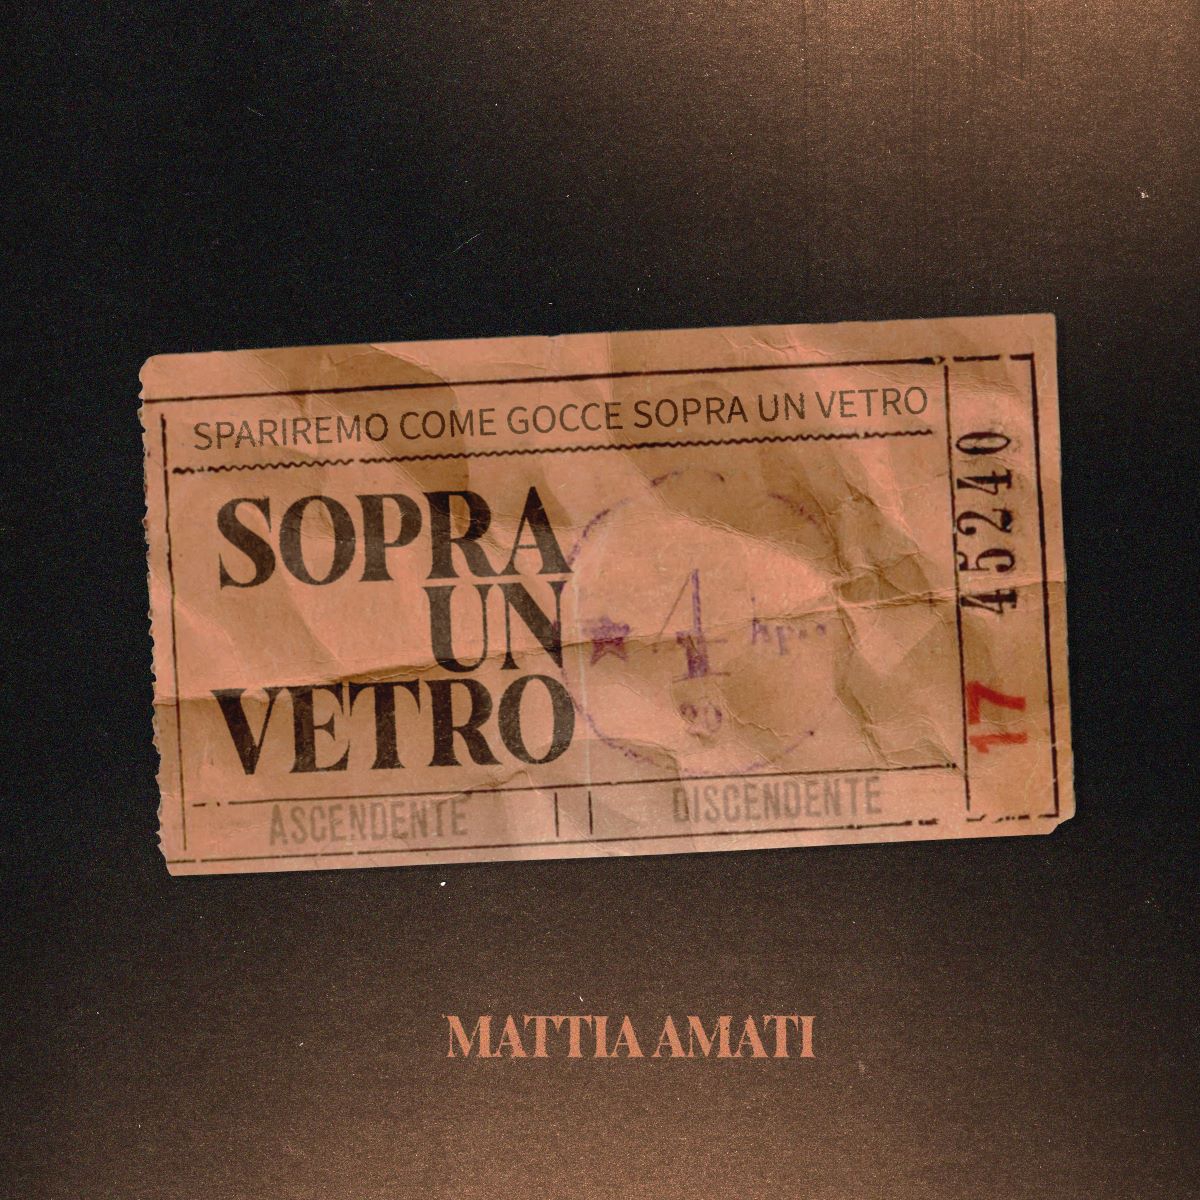 Mattia Amati - “Sopra Un Vetro”